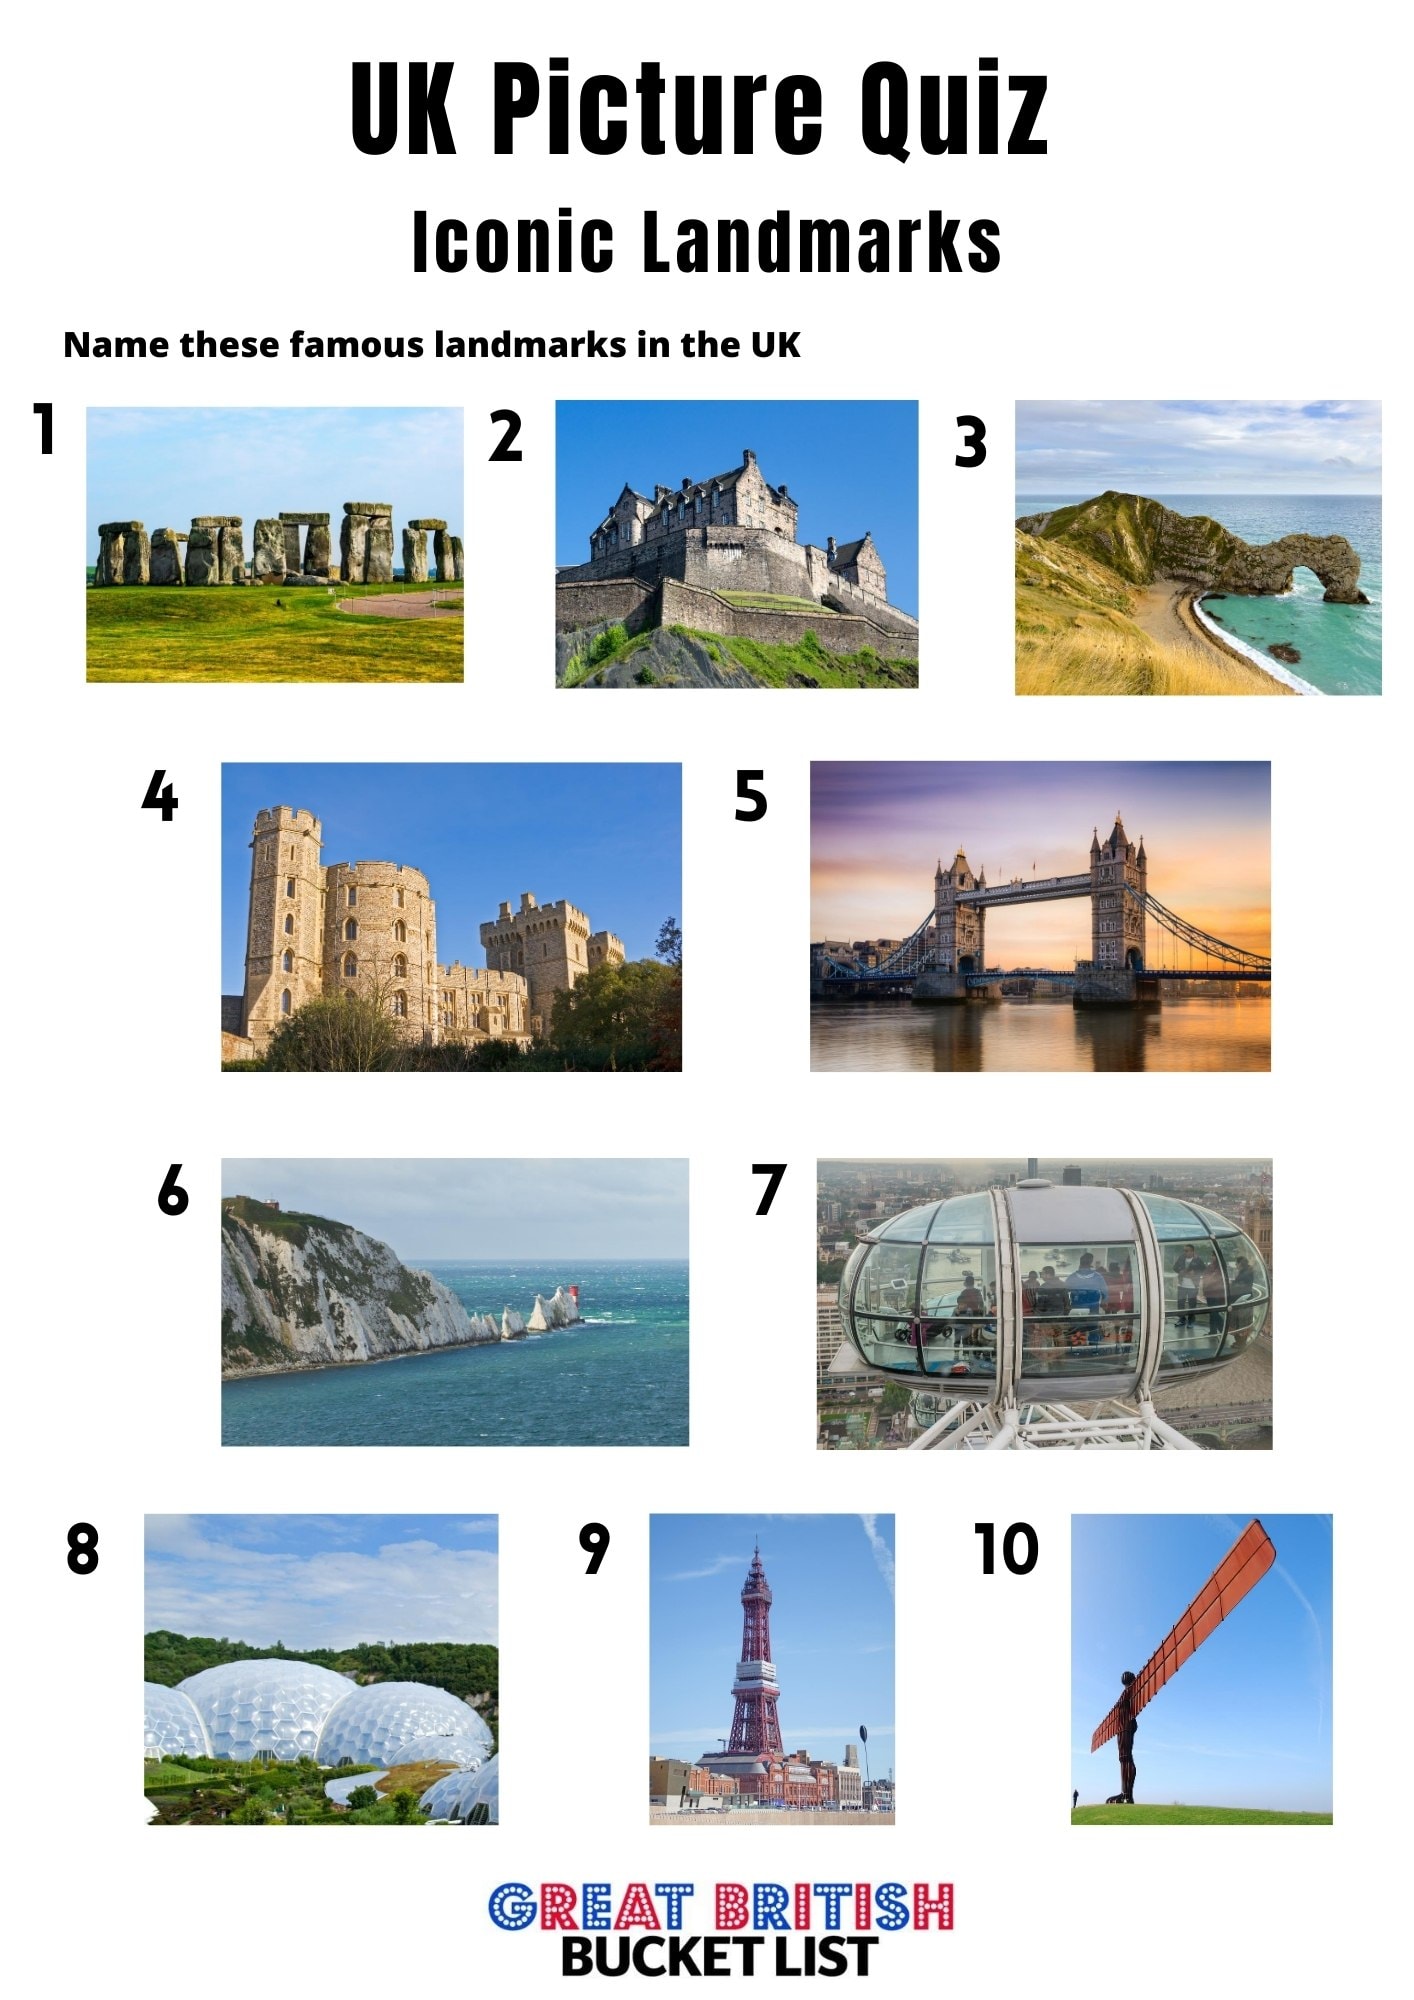 1. Iconic UK Landmarks - UK picture quiz